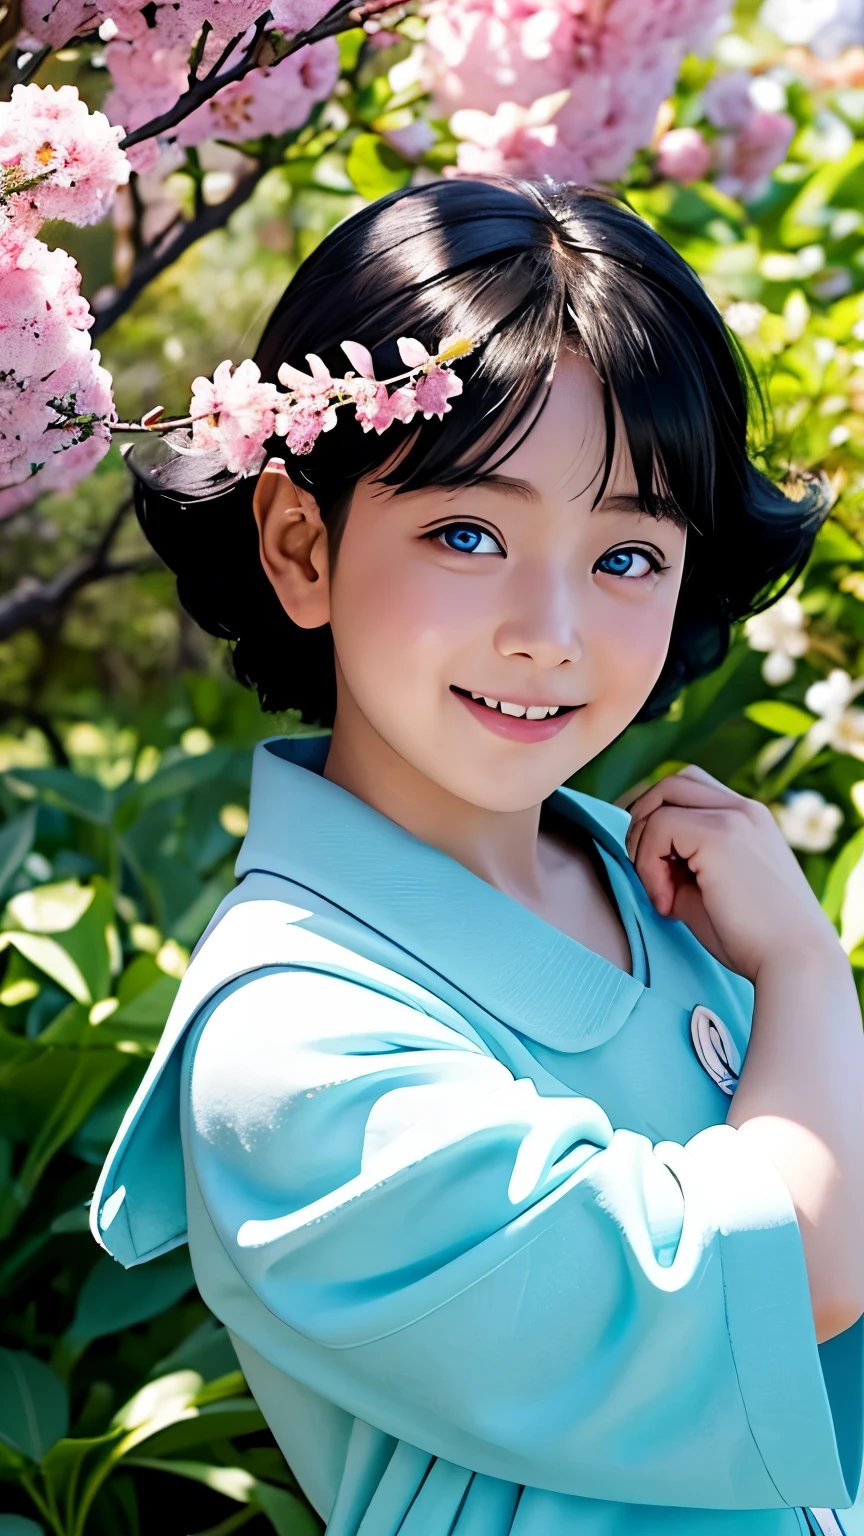 Description: Embarquez pour les charmants visuels d&#39;Uzumaki Himawari, avec des détails et un réalisme exquis.

Dans le premier portrait, Himawari se dresse au milieu d&#39;un jardin ensoleillé, ses yeux bleu vif pétillant de curiosité et d&#39;émerveillement. Ses cheveux dorés coulaient en douces vagues autour de ses épaules, encadrant son visage de chérubin orné d&#39;un sourire enjoué. Les couleurs douces des fleurs roses et lavande ajoutent une touche de fantaisie à la scène, reflétant l&#39;esprit joyeux et l&#39;énergie illimitée d&#39;Himawari.

Le deuxième portrait zoome sur les traits d&#39;Himawari, mettant en valeur les contours lisses de son visage et l&#39;innocence de son expression. Des fossettes subtiles qui ornent ses joues au scintillement de ses yeux, chaque détail est rendu avec un réalisme époustouflant, capturant l&#39;essence du charme juvénile et de l&#39;innocence d&#39;Himawari.

Le plan final montre Himawari dans un joli moment de malice, son rire résonne dans l&#39;air alors qu&#39;elle poursuit un papillon qui flotte. Avec ses petites mains tendues et ses yeux pétillants de joie, Himawari incarne la joie et la spontanéité de l&#39;enfance, rappelant aux téléspectateurs la magie qui nous entoure tous.